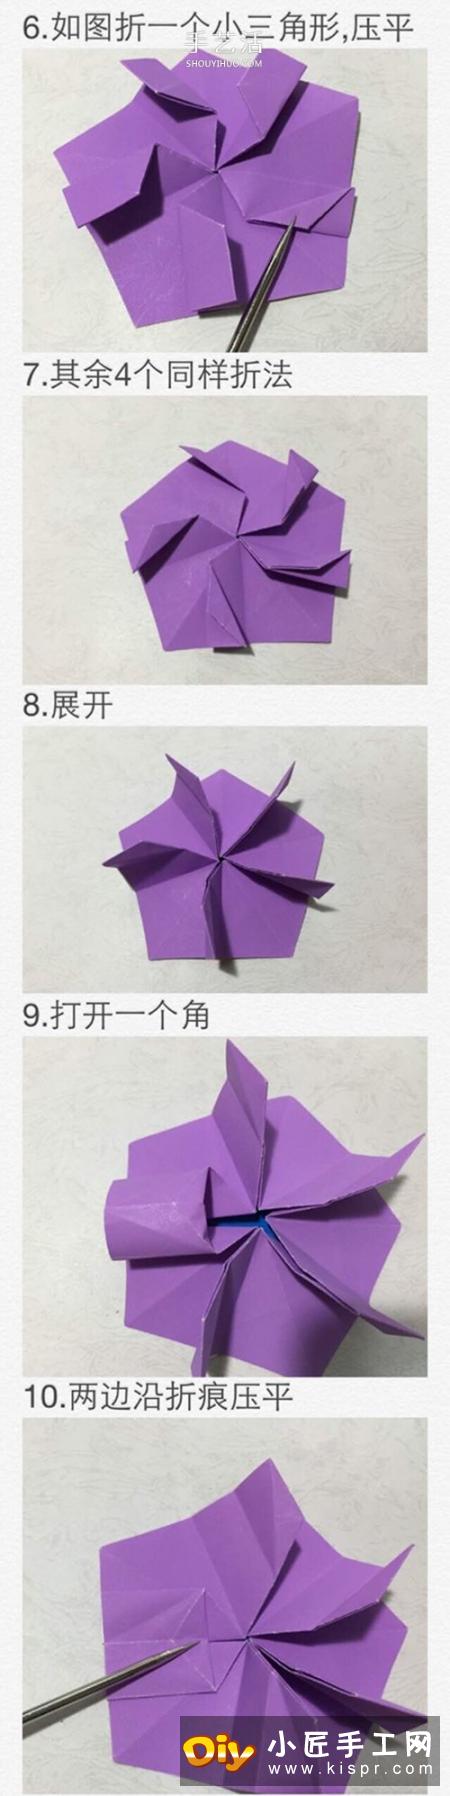 美丽樱花星星的折法图解 樱花五角星折纸步骤